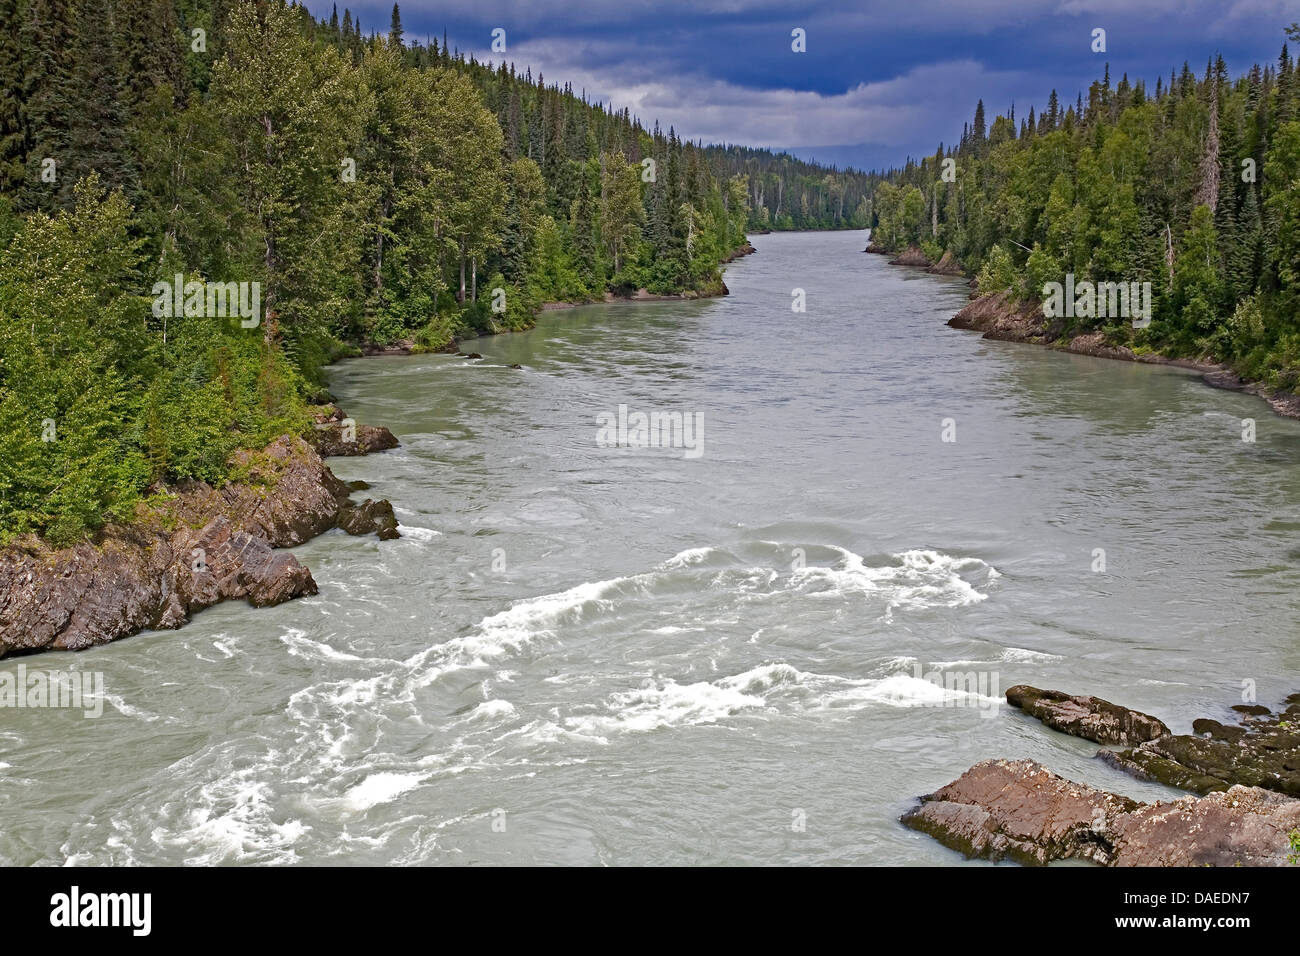 Nass River, Canada, British Columbia Stock Photo